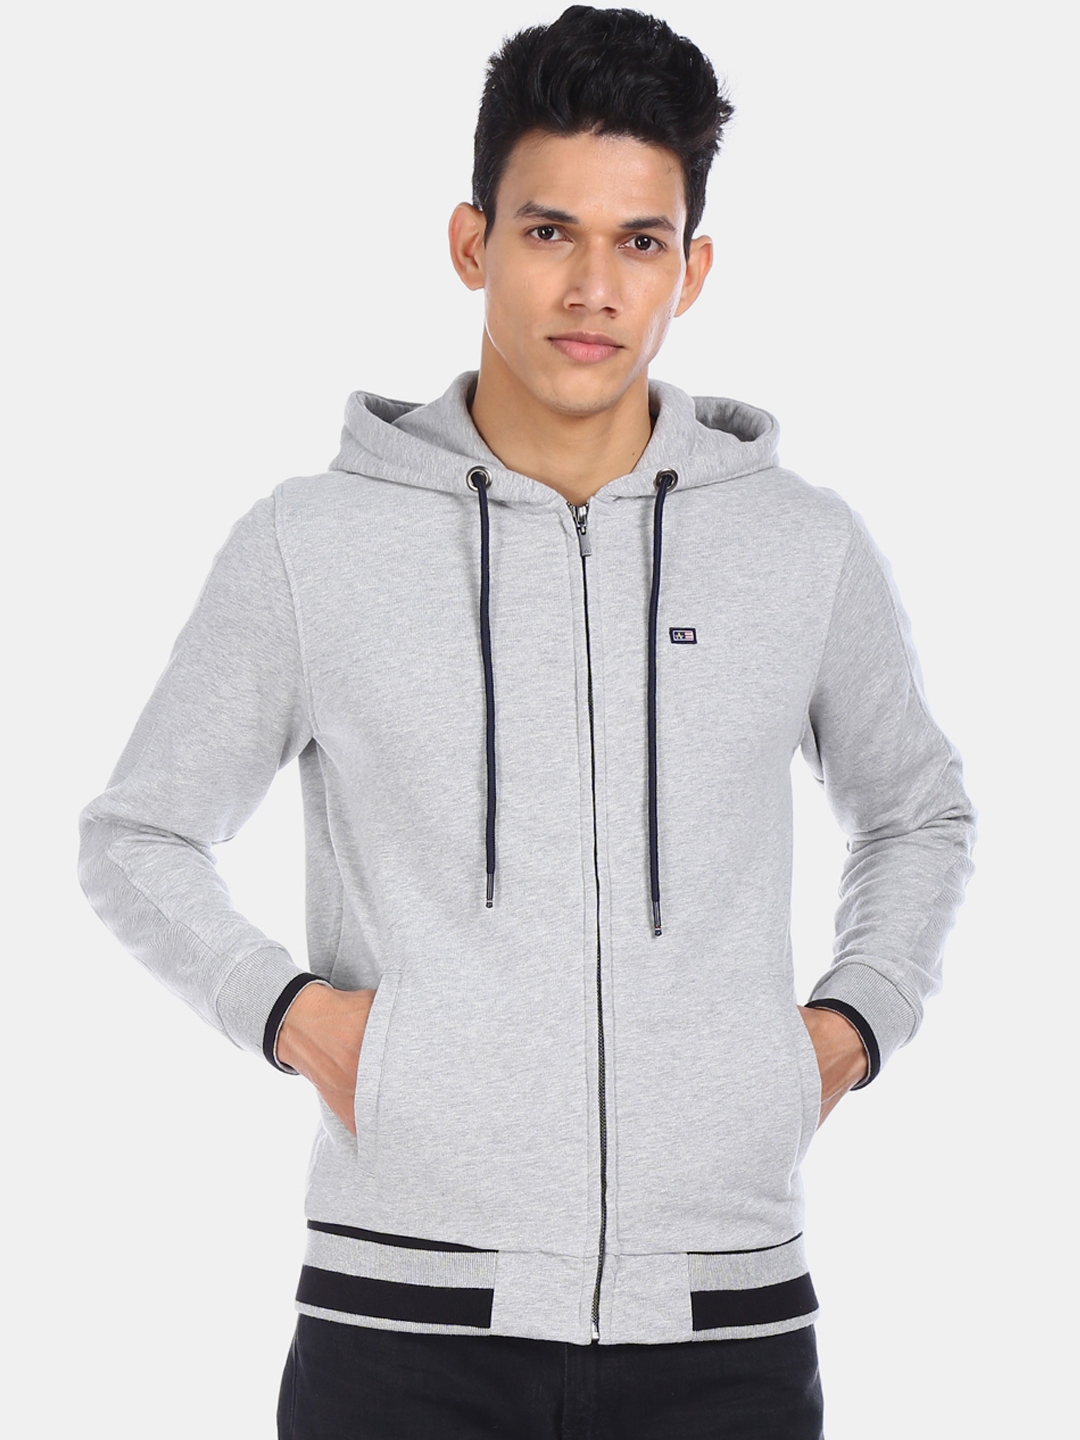 Buy Arrow Sport Men Grey Solid Hooded Sweatshirt - Sweatshirts for Men ...